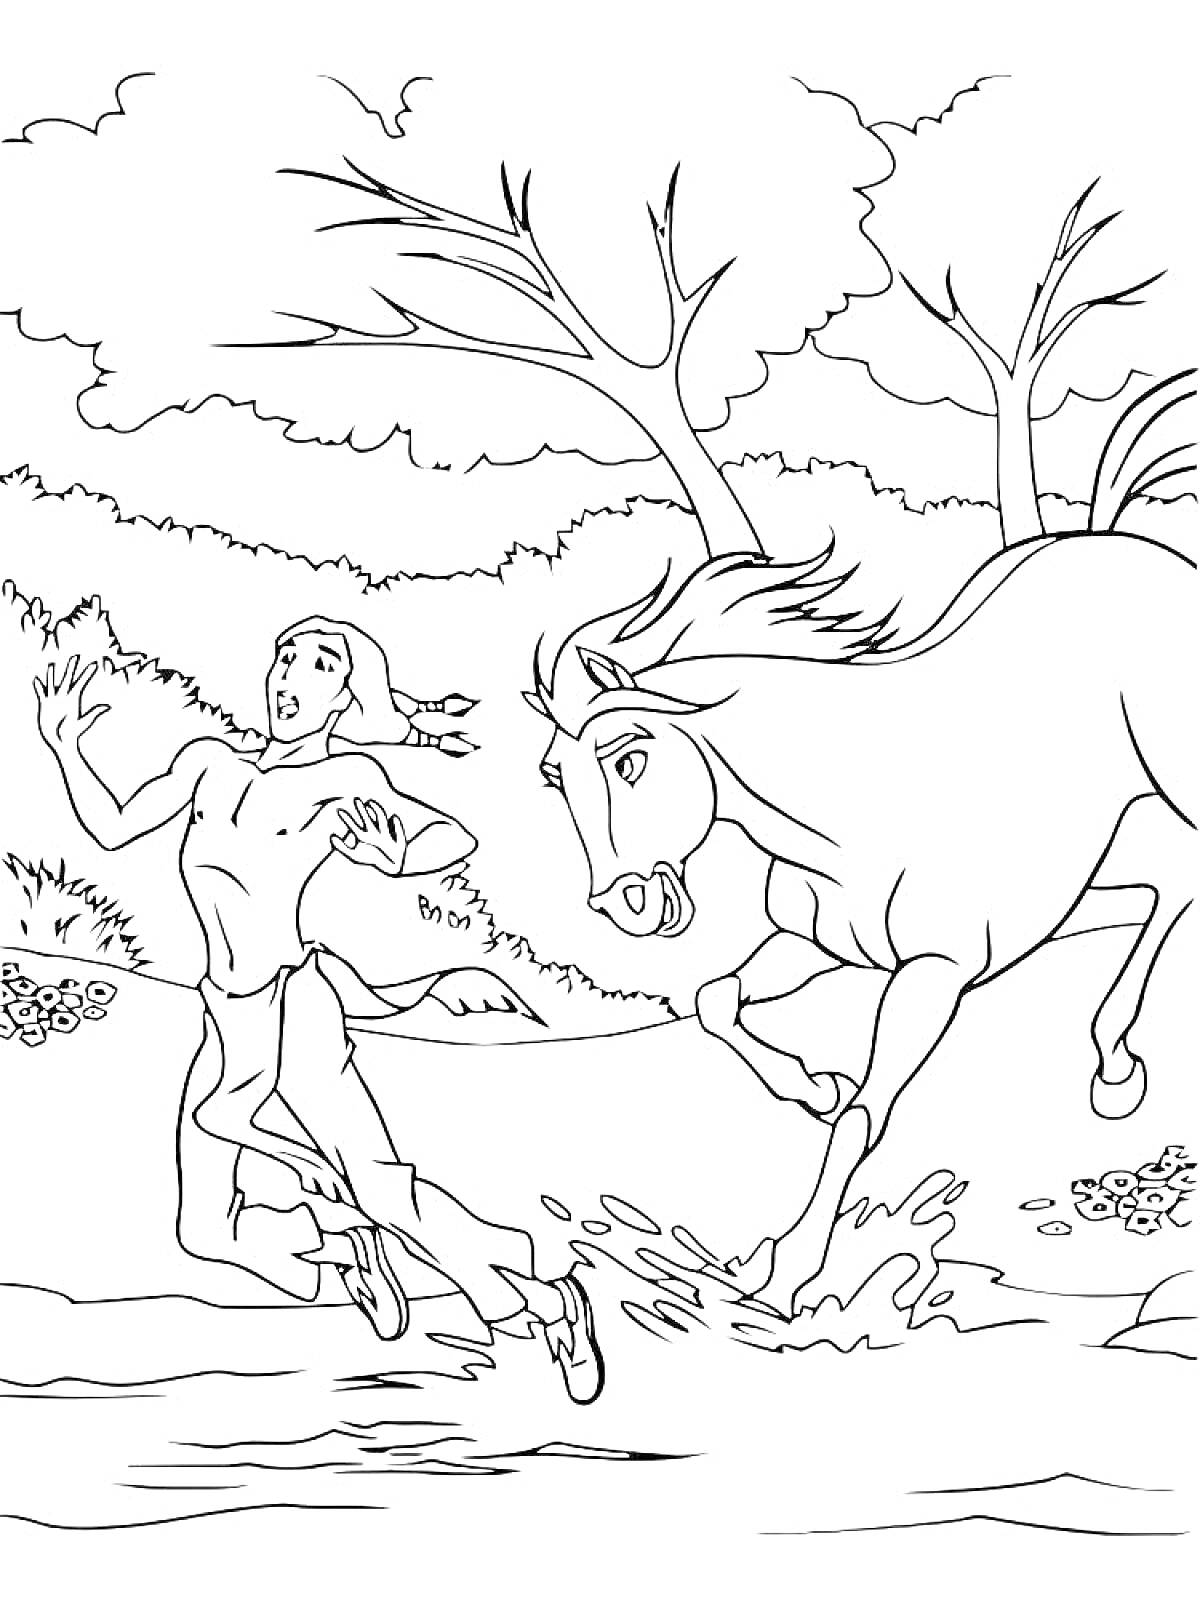 Человек бегущий от лошади на берегу реки на фоне леса